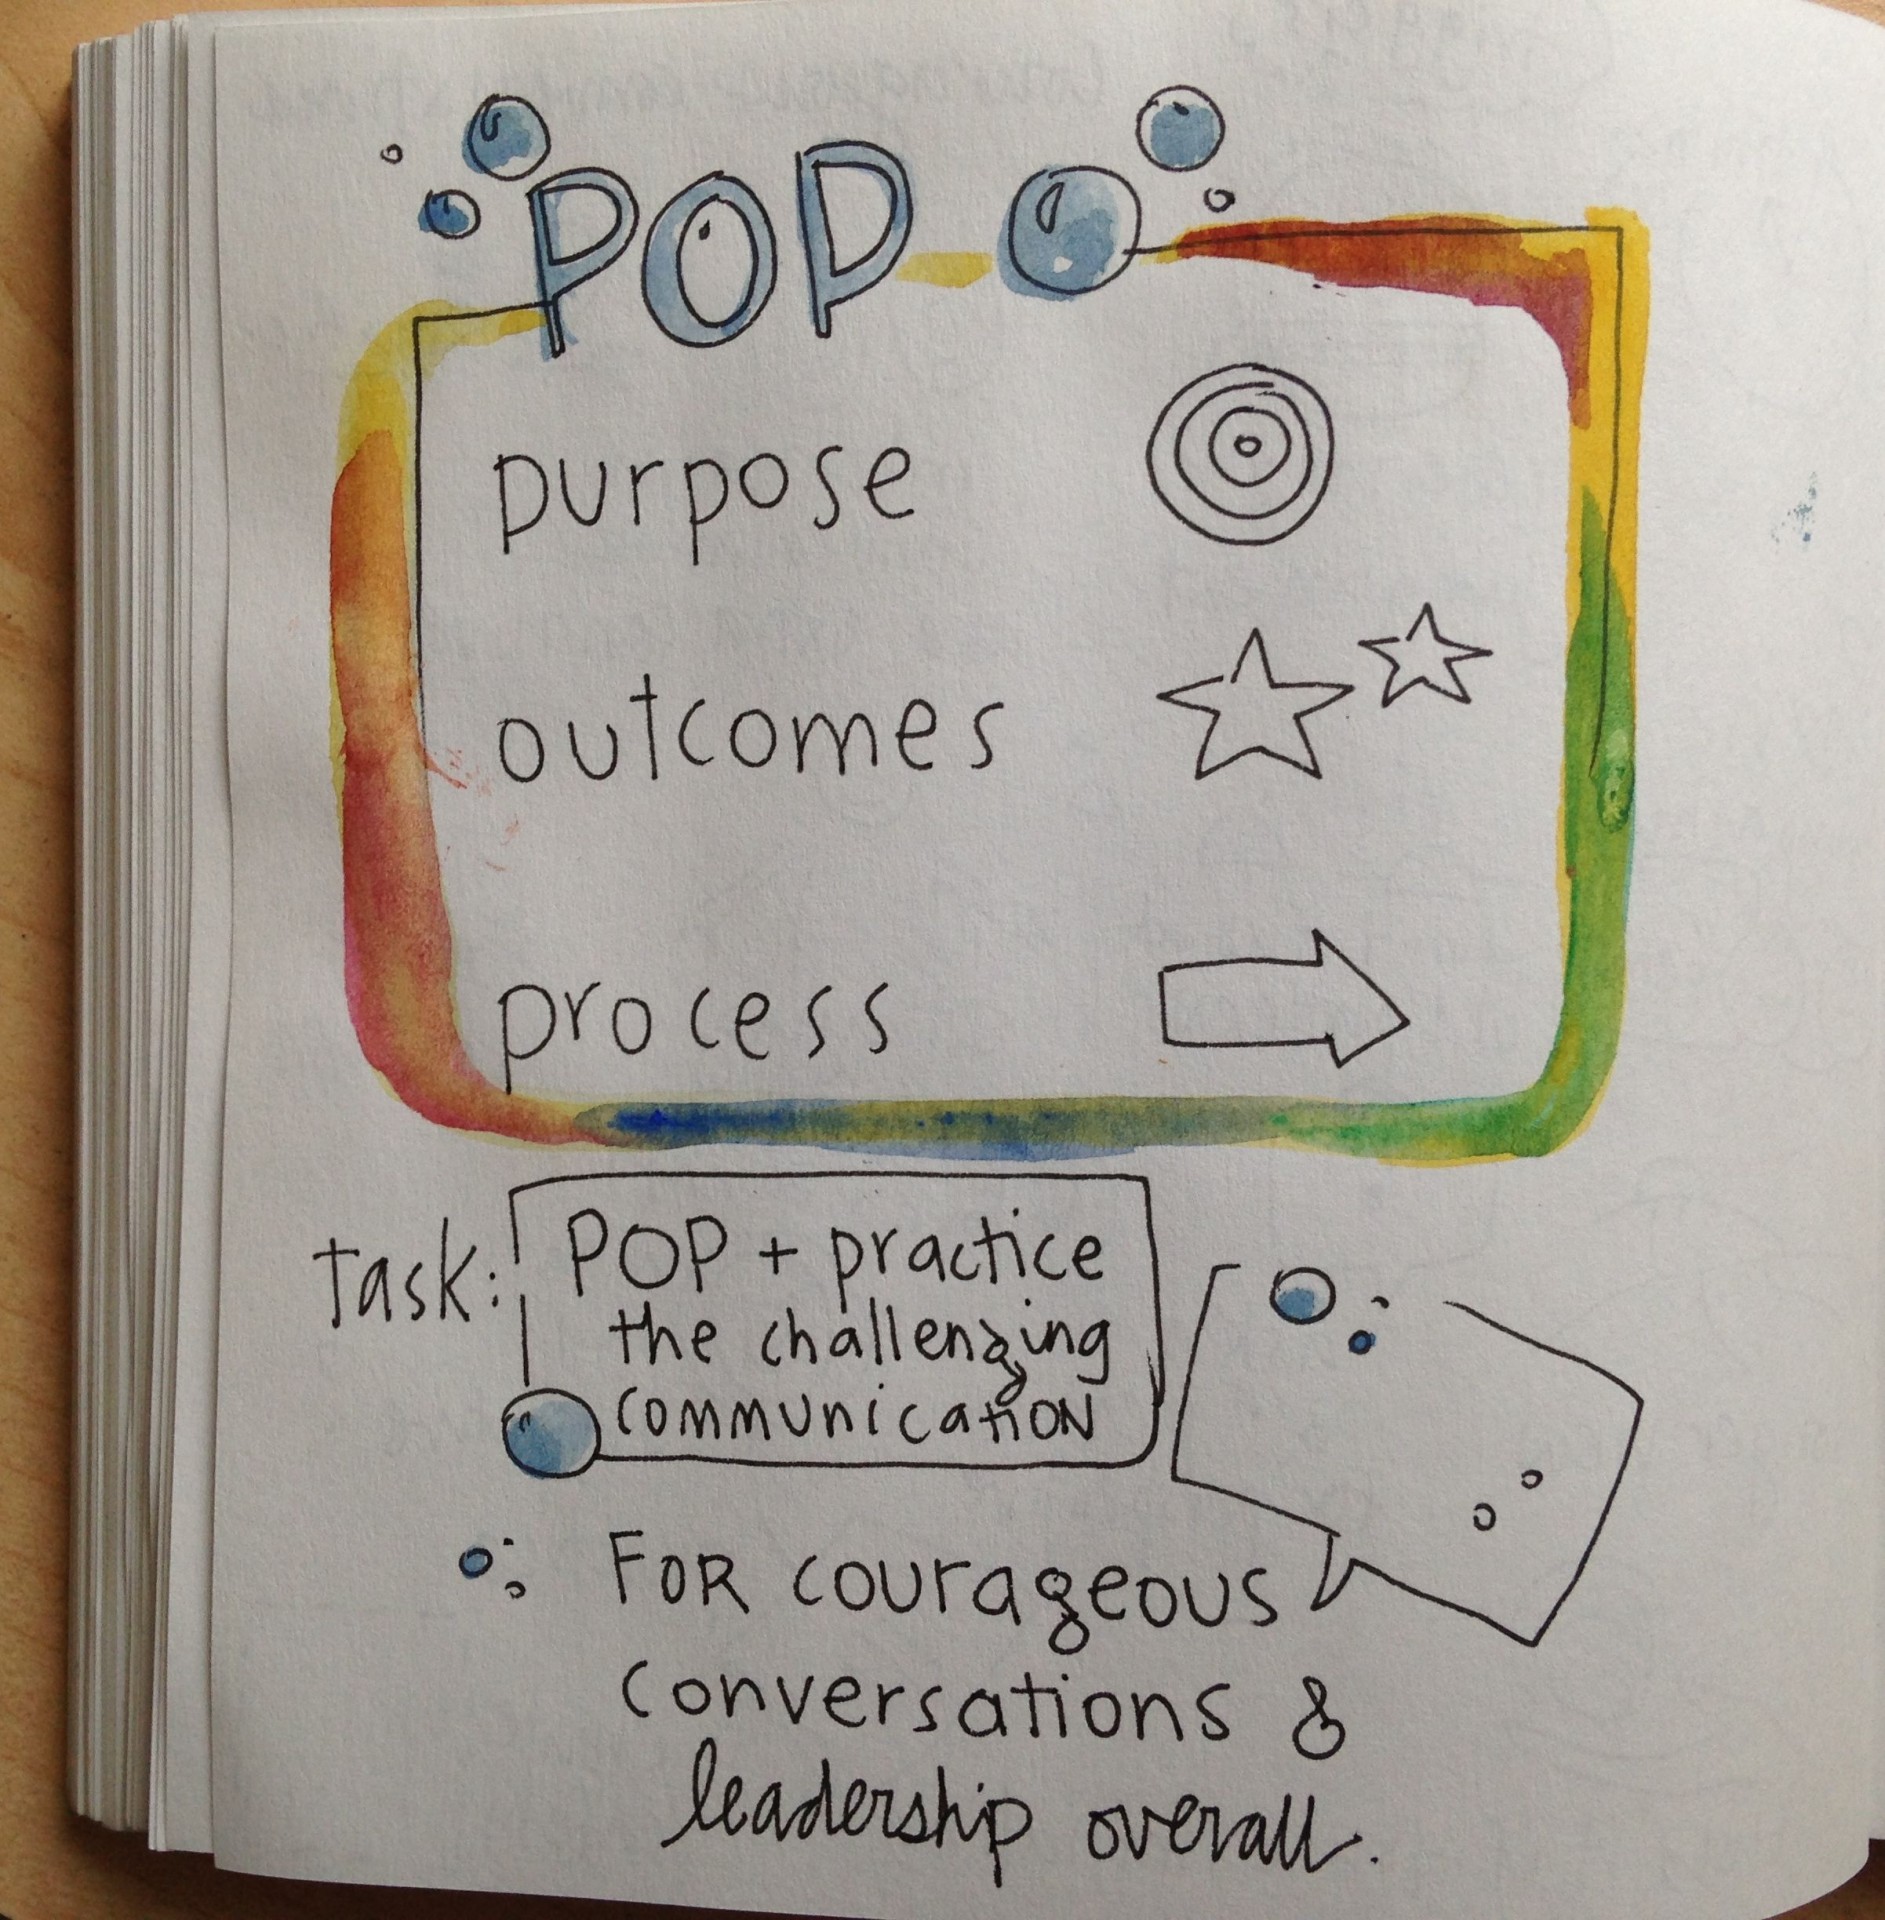 POP: purpose, outcomes, process sketchnote